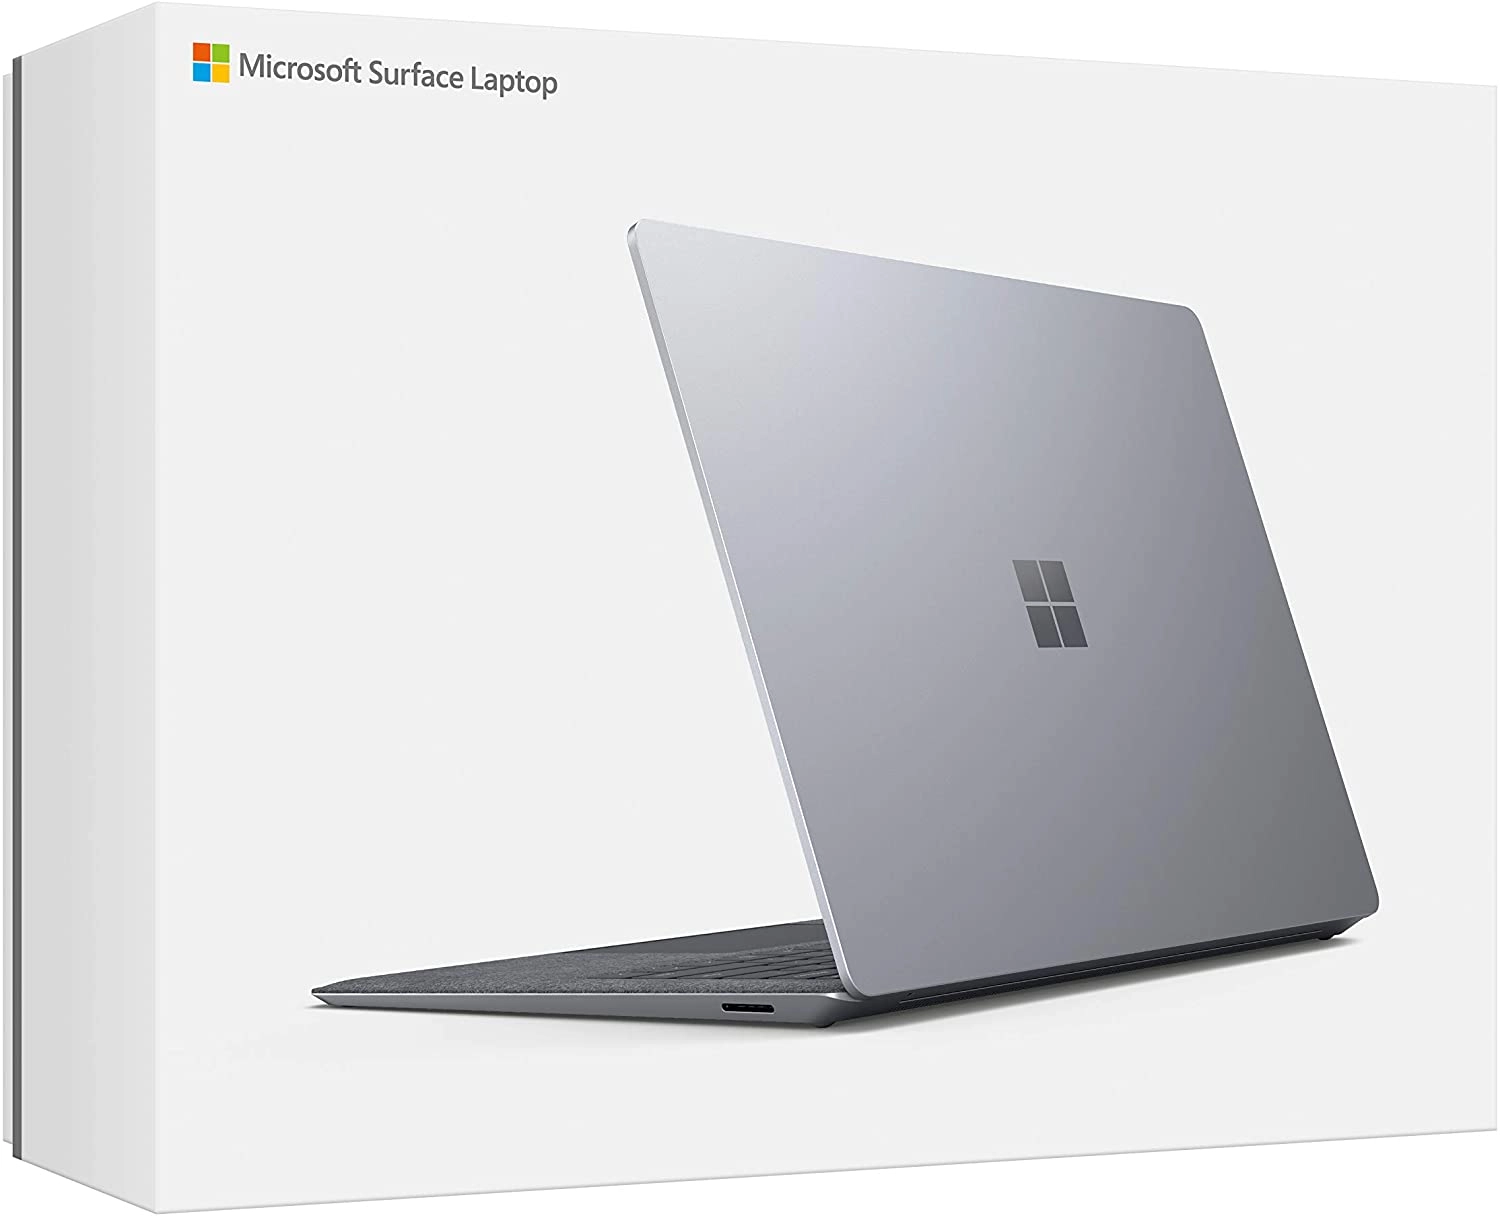 Microsoft Surface Laptop laptop image